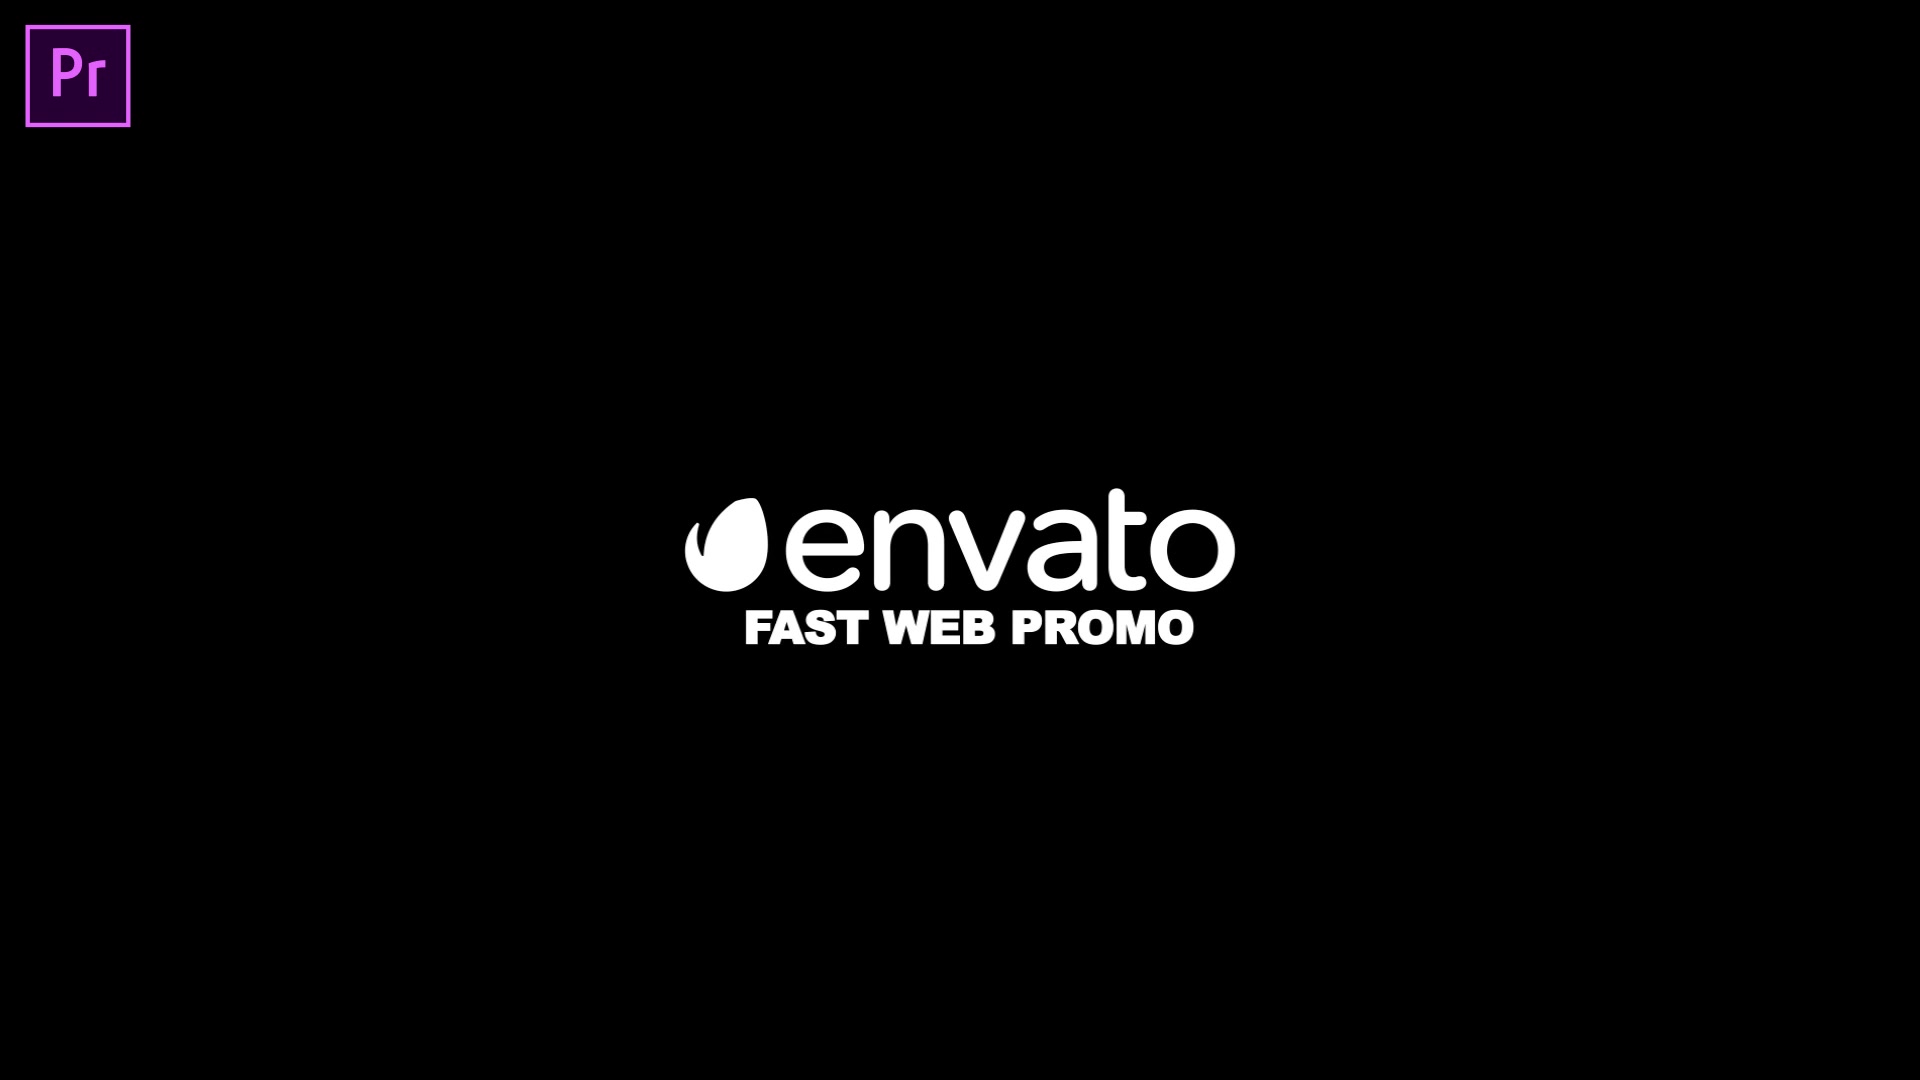 Fast Website Promo Premiere Pro version Videohive 33625280 Premiere Pro Image 12